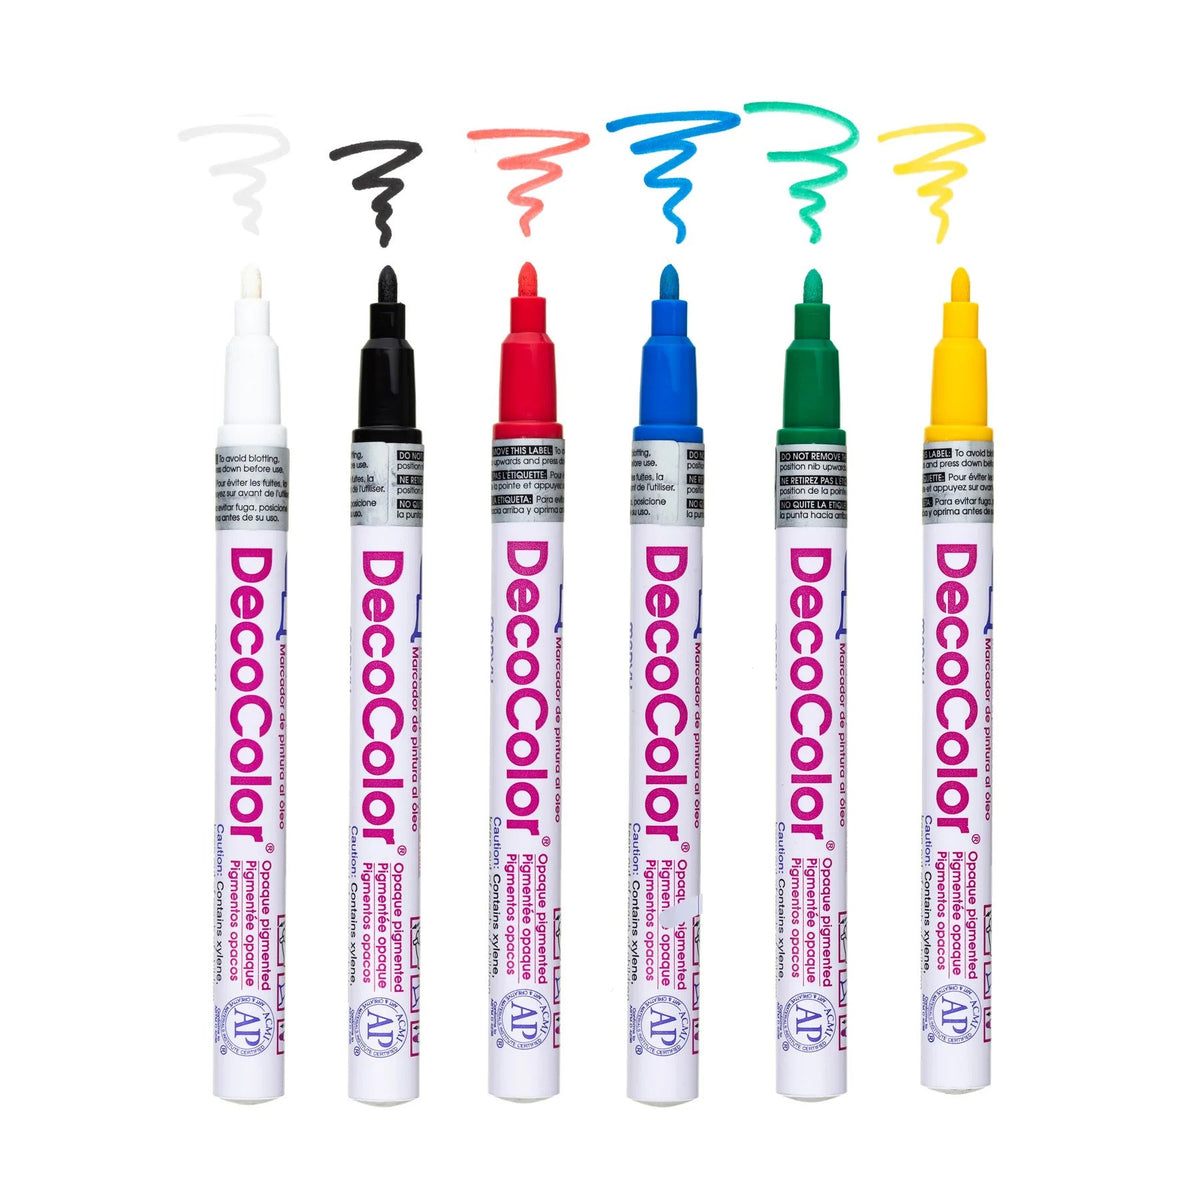 DecoColor Premium Paint Marker - Silver Fine Tip